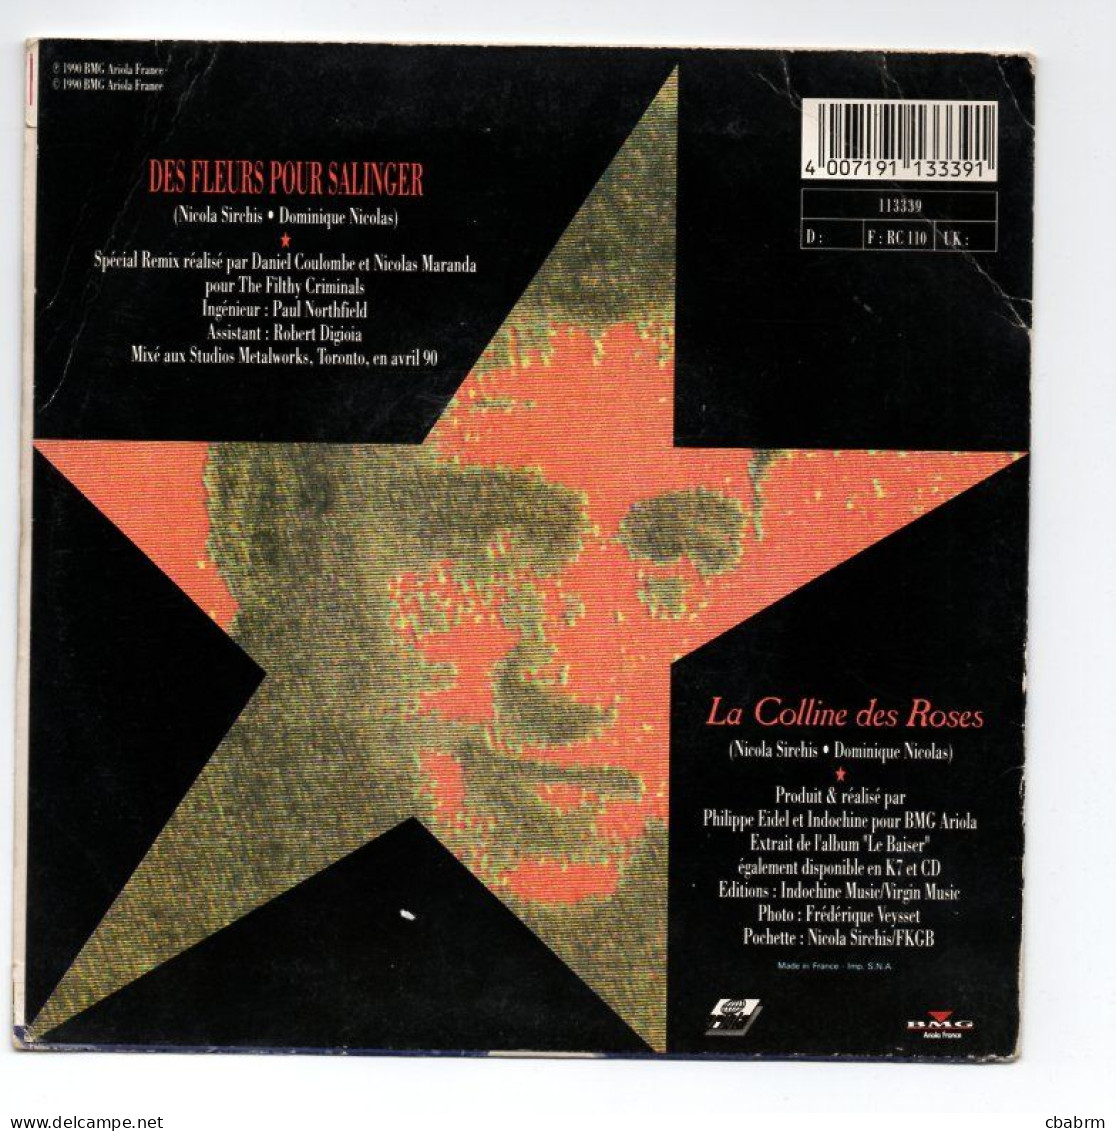 SP 45 TOURS INDOCHINE DES FLEURS POUR SALINGER 1990 FRANCE BMG 113339 - 7" - Otros - Canción Francesa